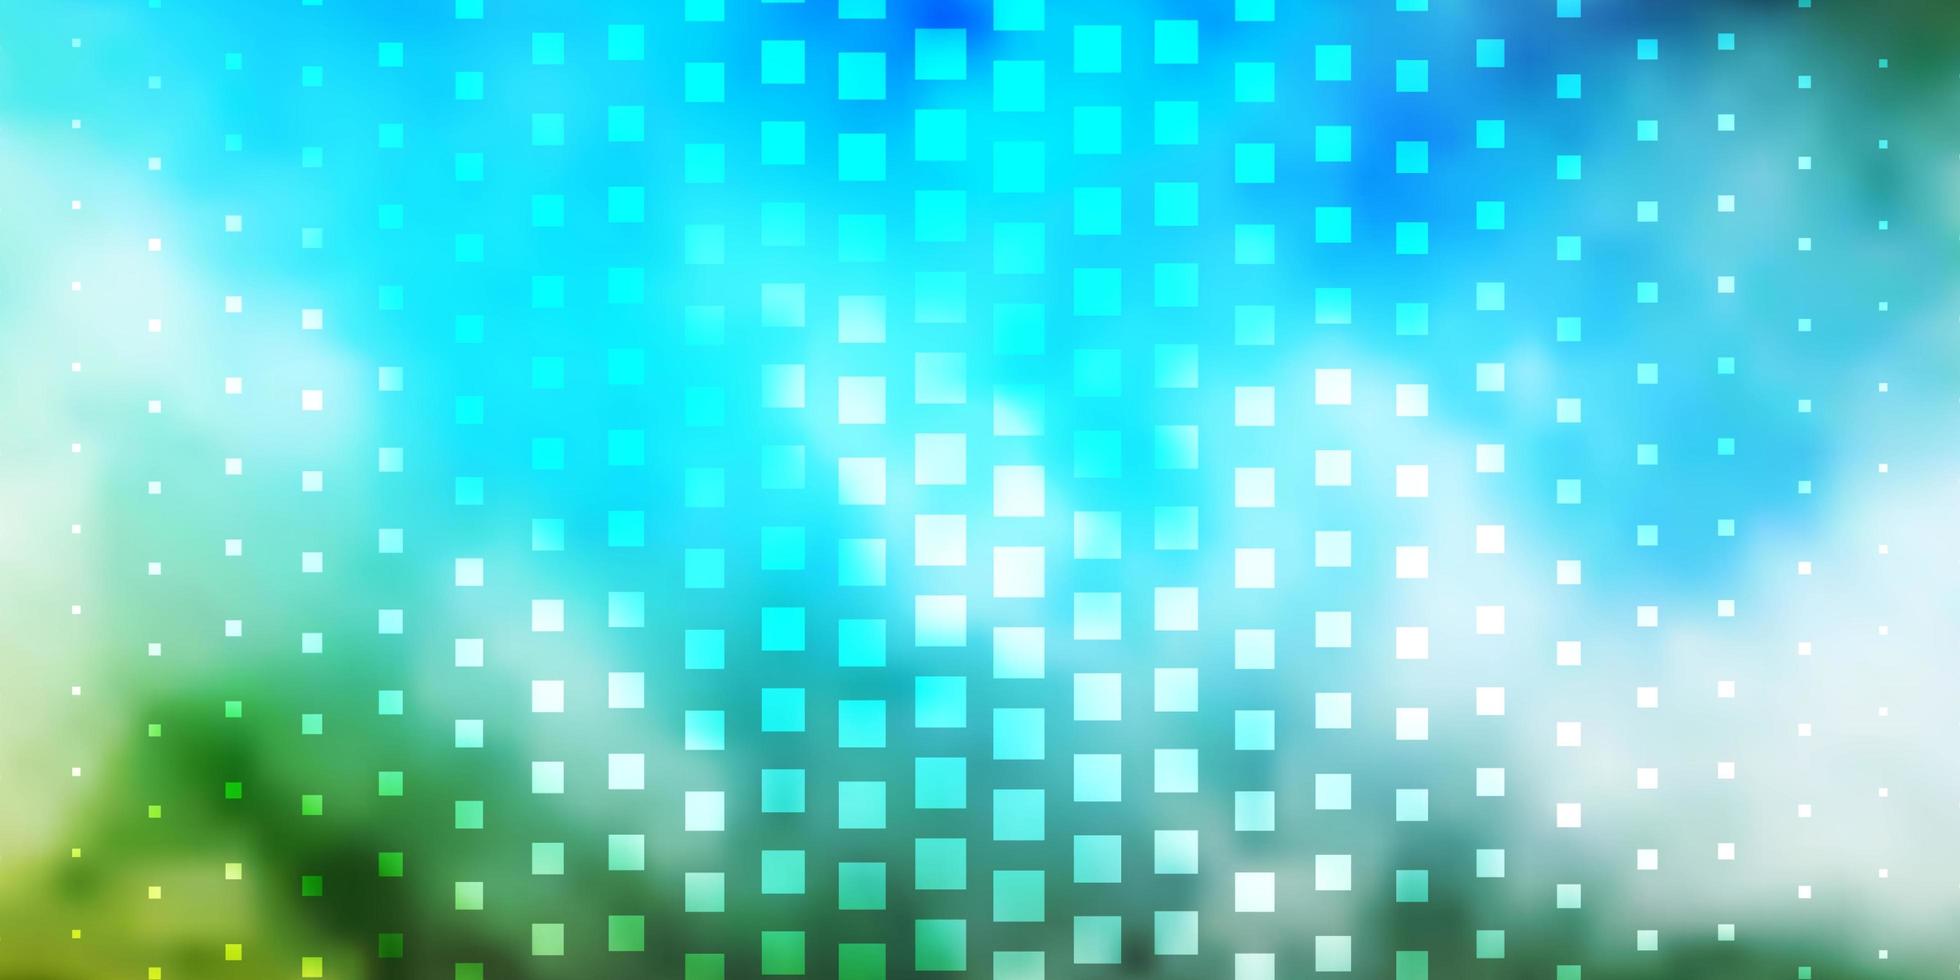 texture de vecteur bleu clair, vert dans un style rectangulaire.